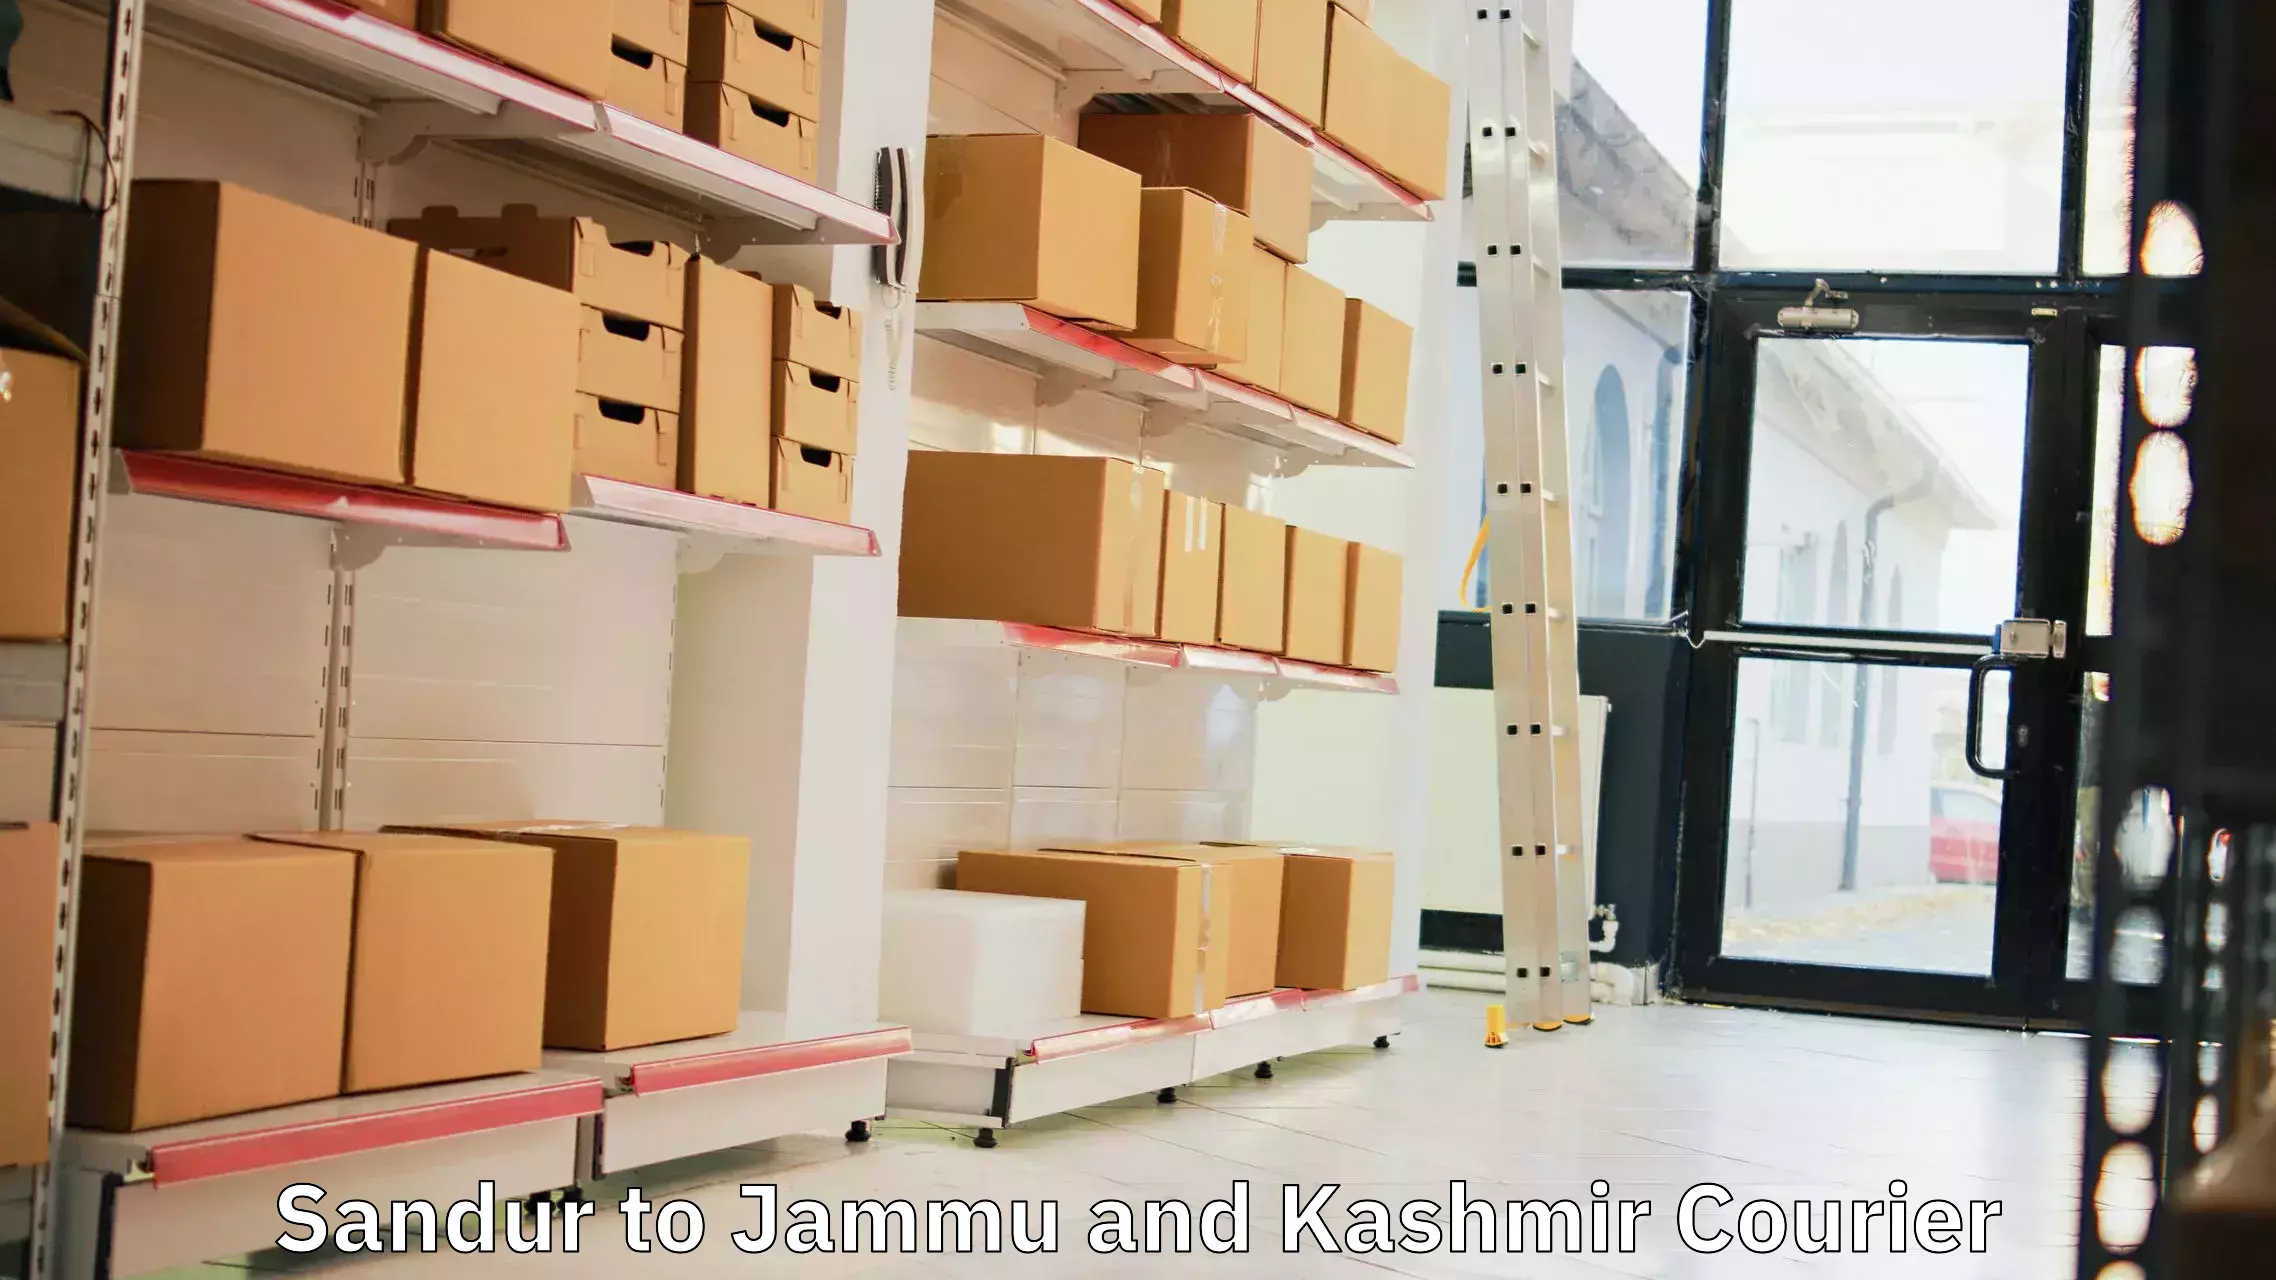 Customer-centric shipping in Sandur to Jammu and Kashmir